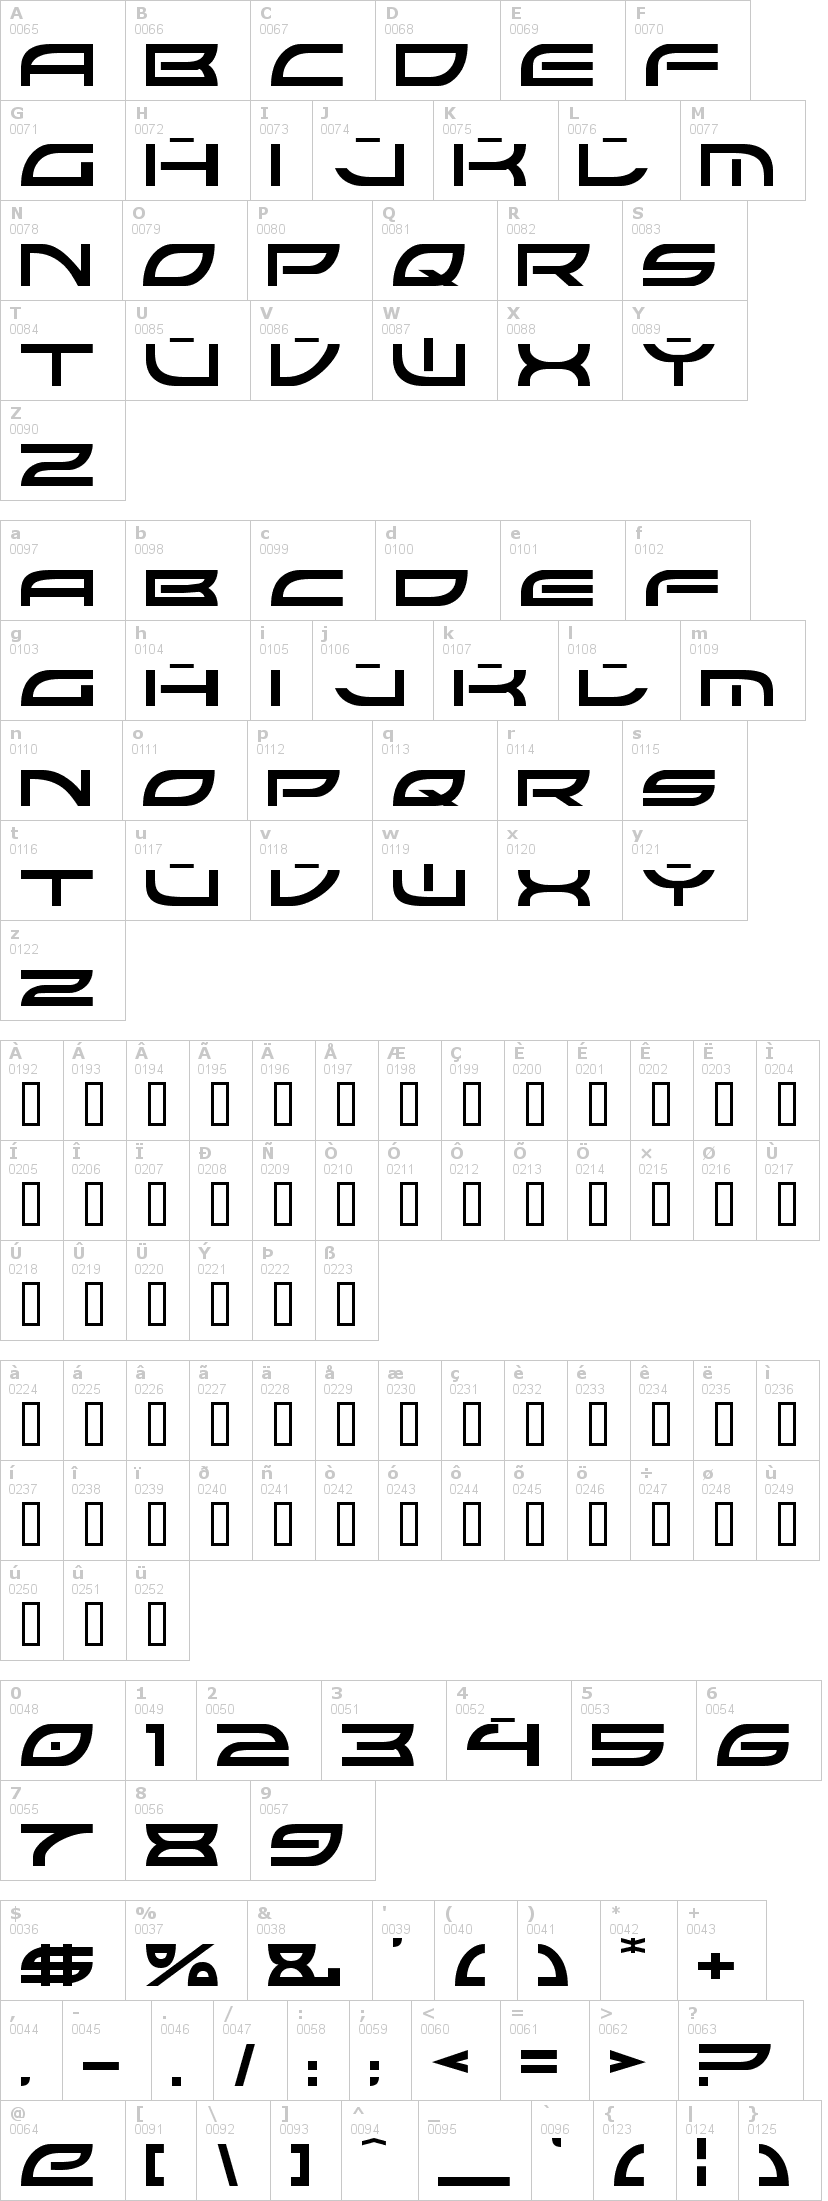 Lettere dell'alfabeto del font colony-wars con le quali è possibile realizzare adesivi prespaziati